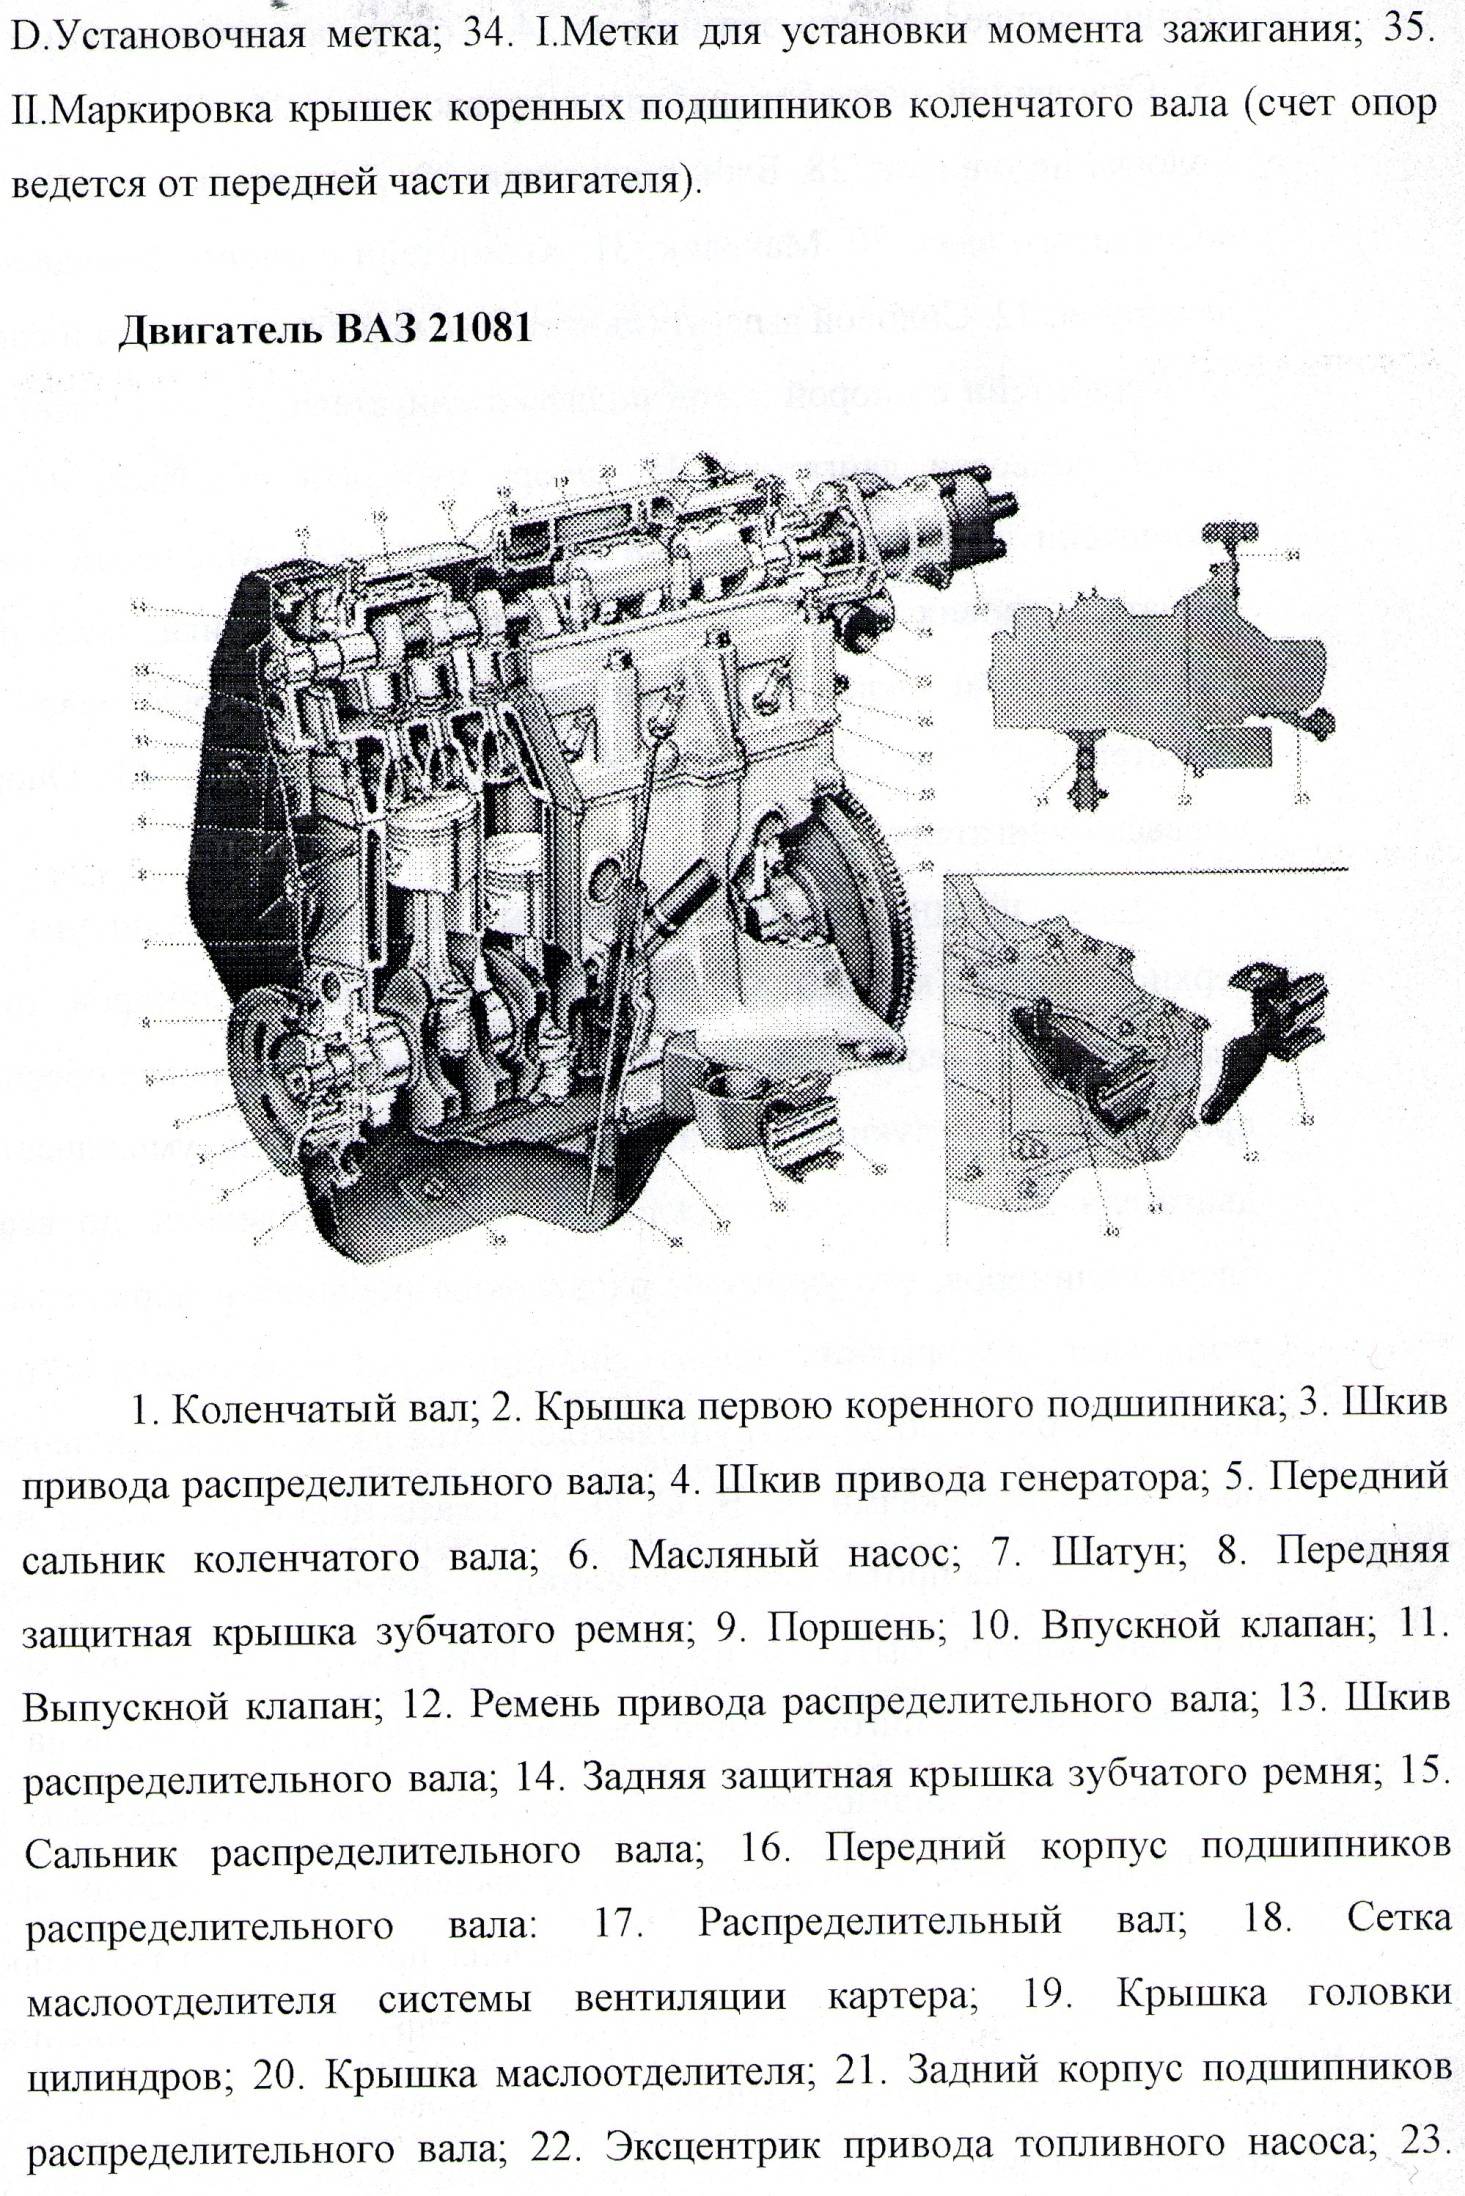 Двигатель в разборе с описанием и схемами